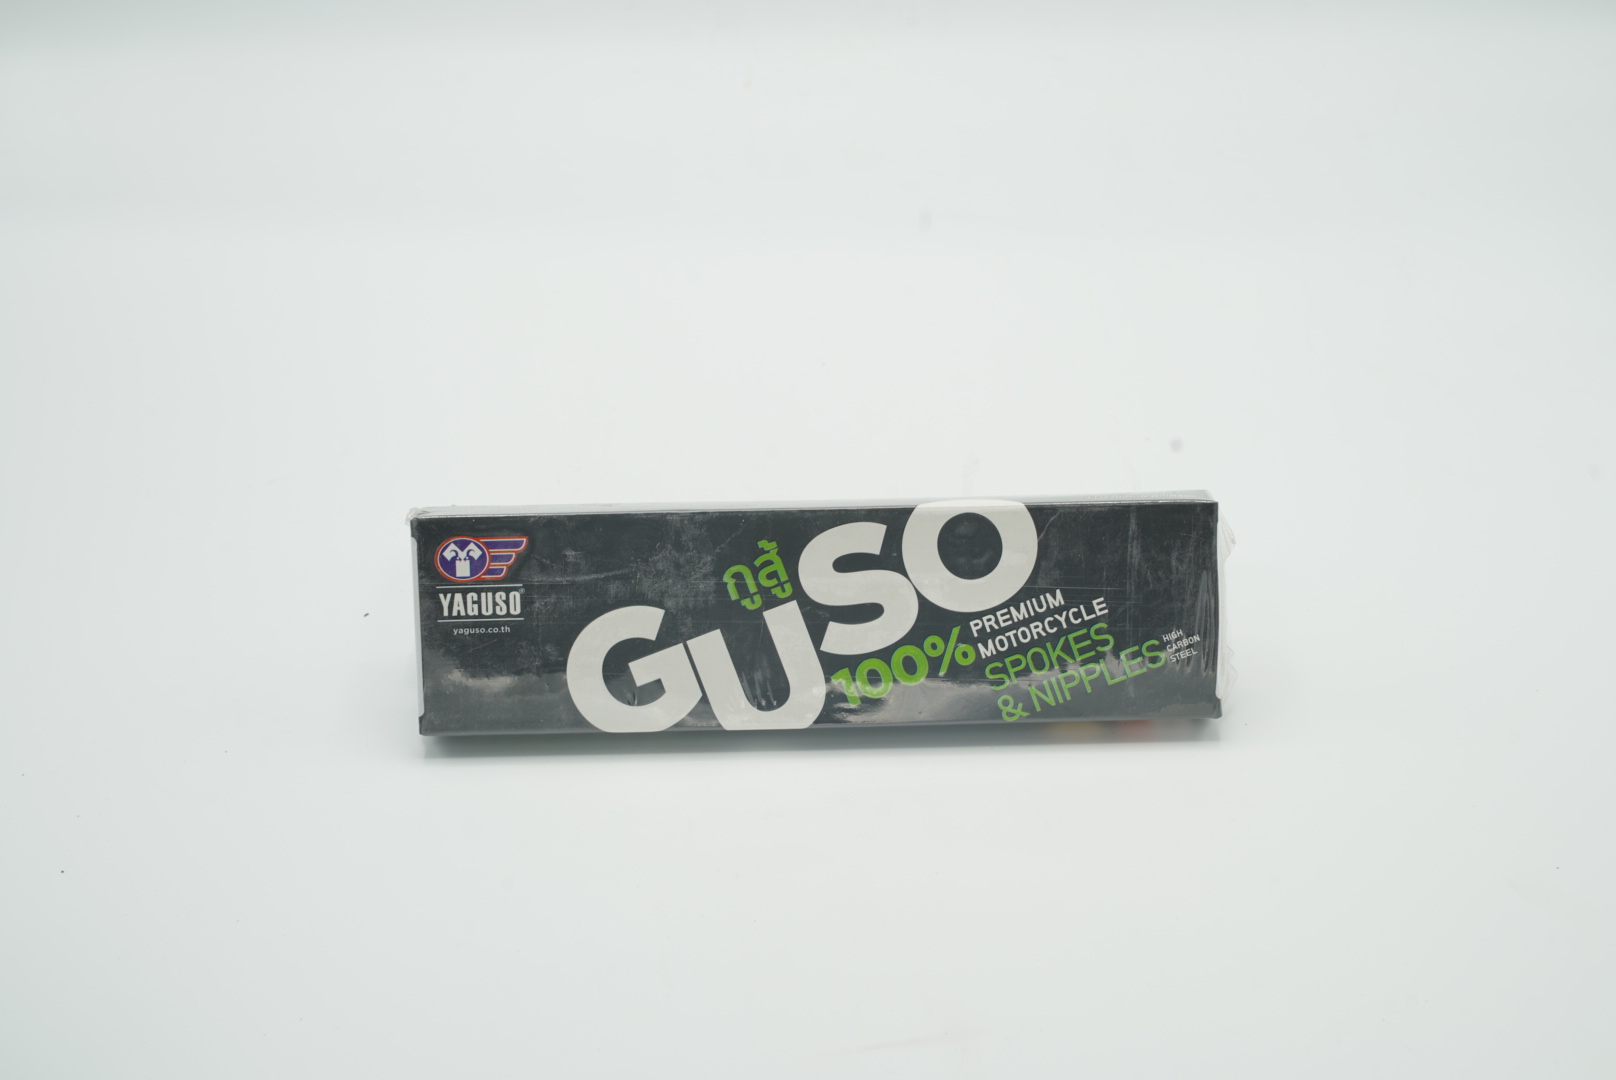 ซี่ลวด ชุบ กูสู้ GUSO GUSU YAGUSO 9-10x157 มอเตอร์ไซค์ อุปกรณ์ ไฟ ชิ้นส่วน สี น้ำยา น้ำมัน ภายนอก ภายใน ต่างๆ